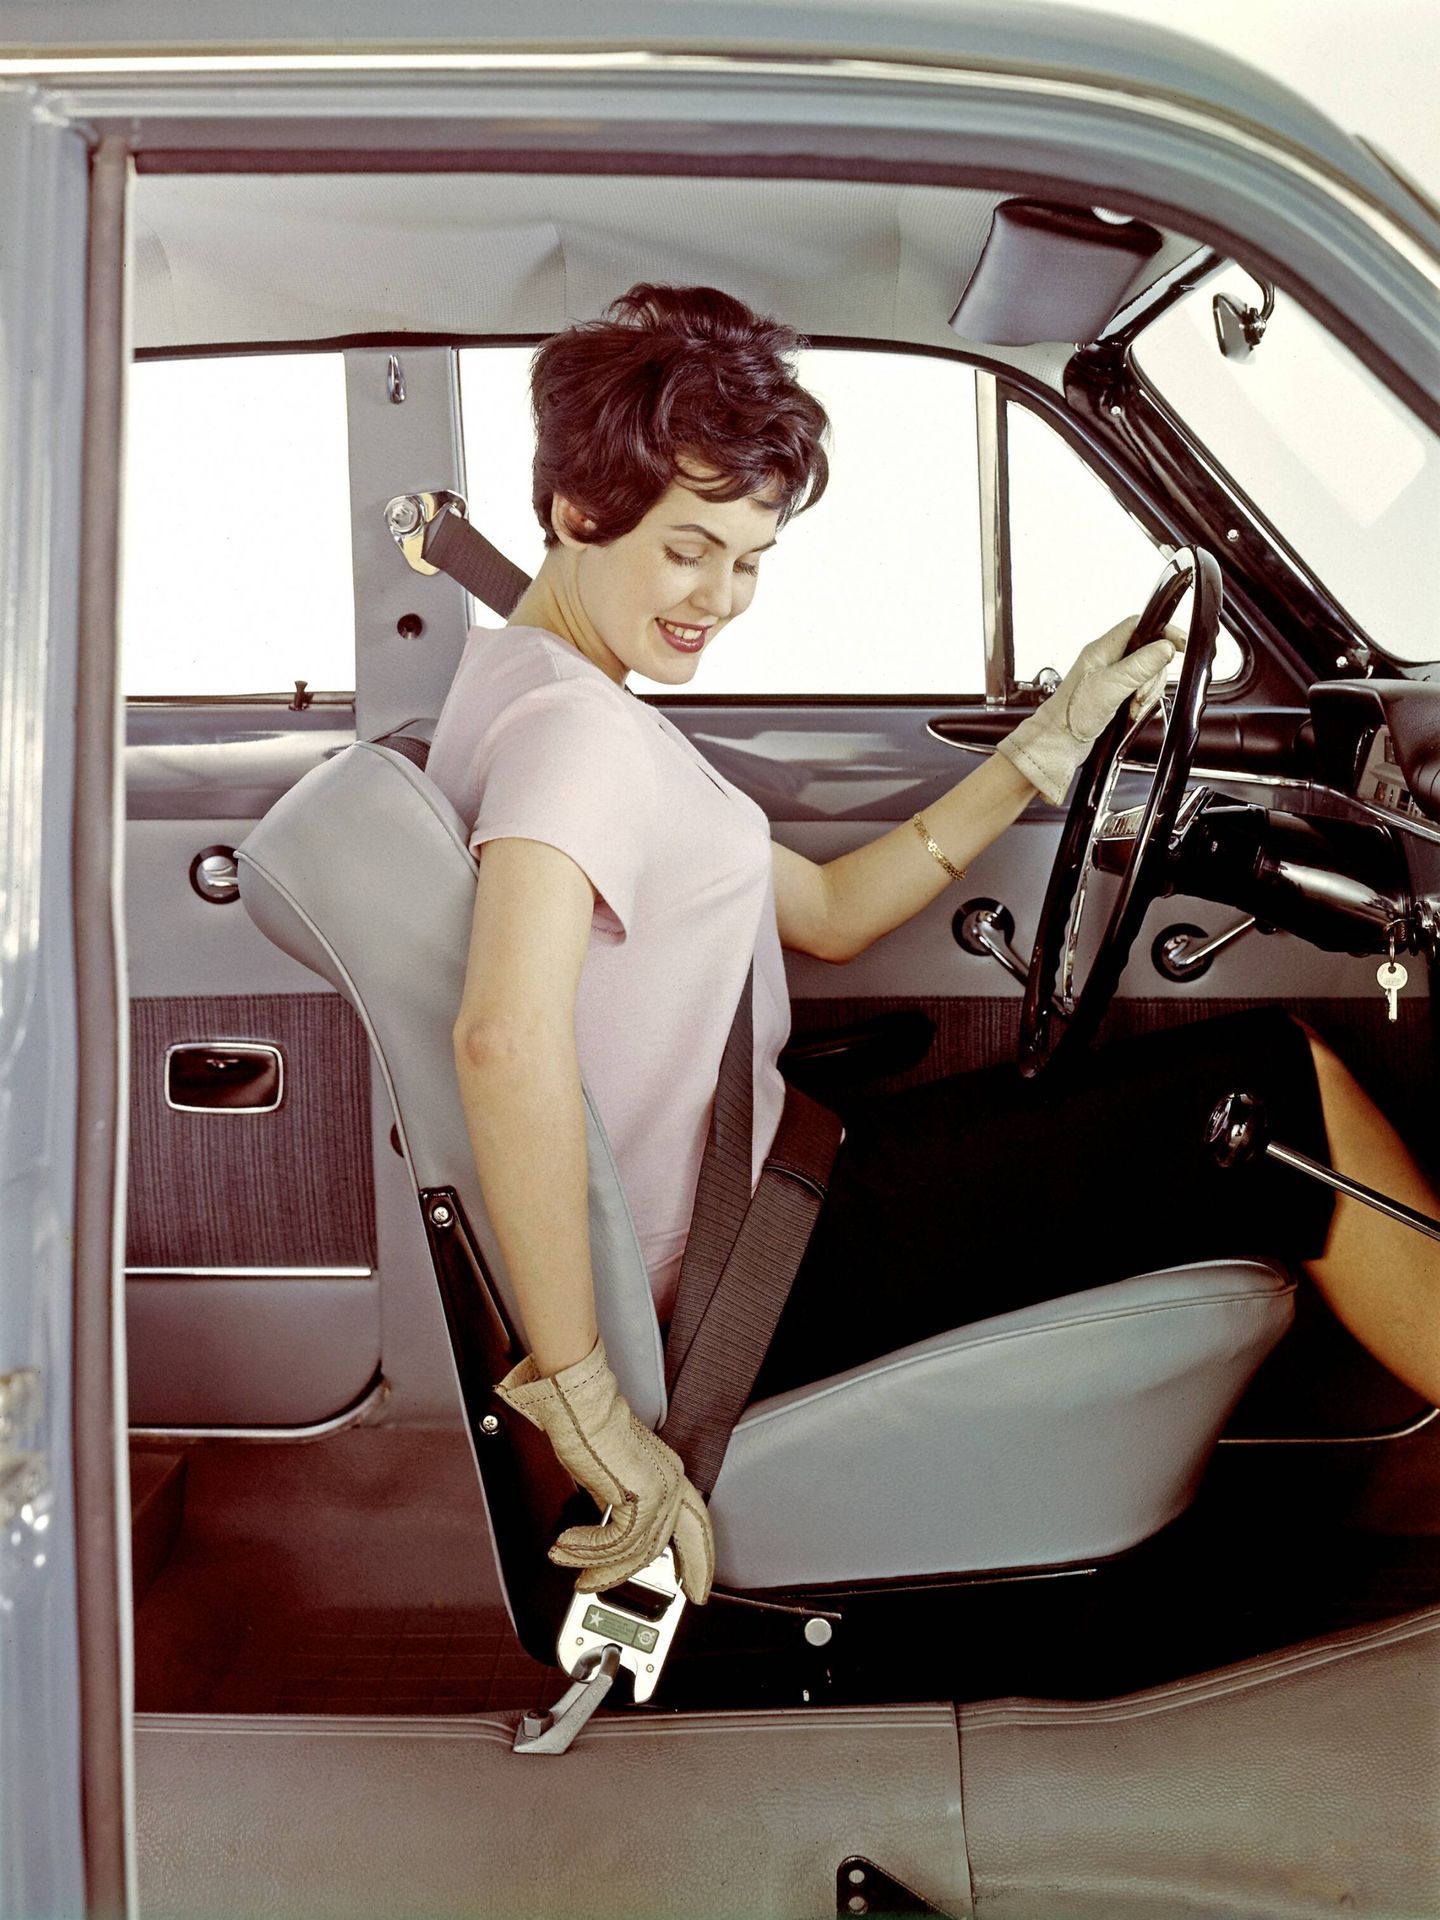 La menor estatura de muchas mujeres se relaciona con una postura insegura al volante.